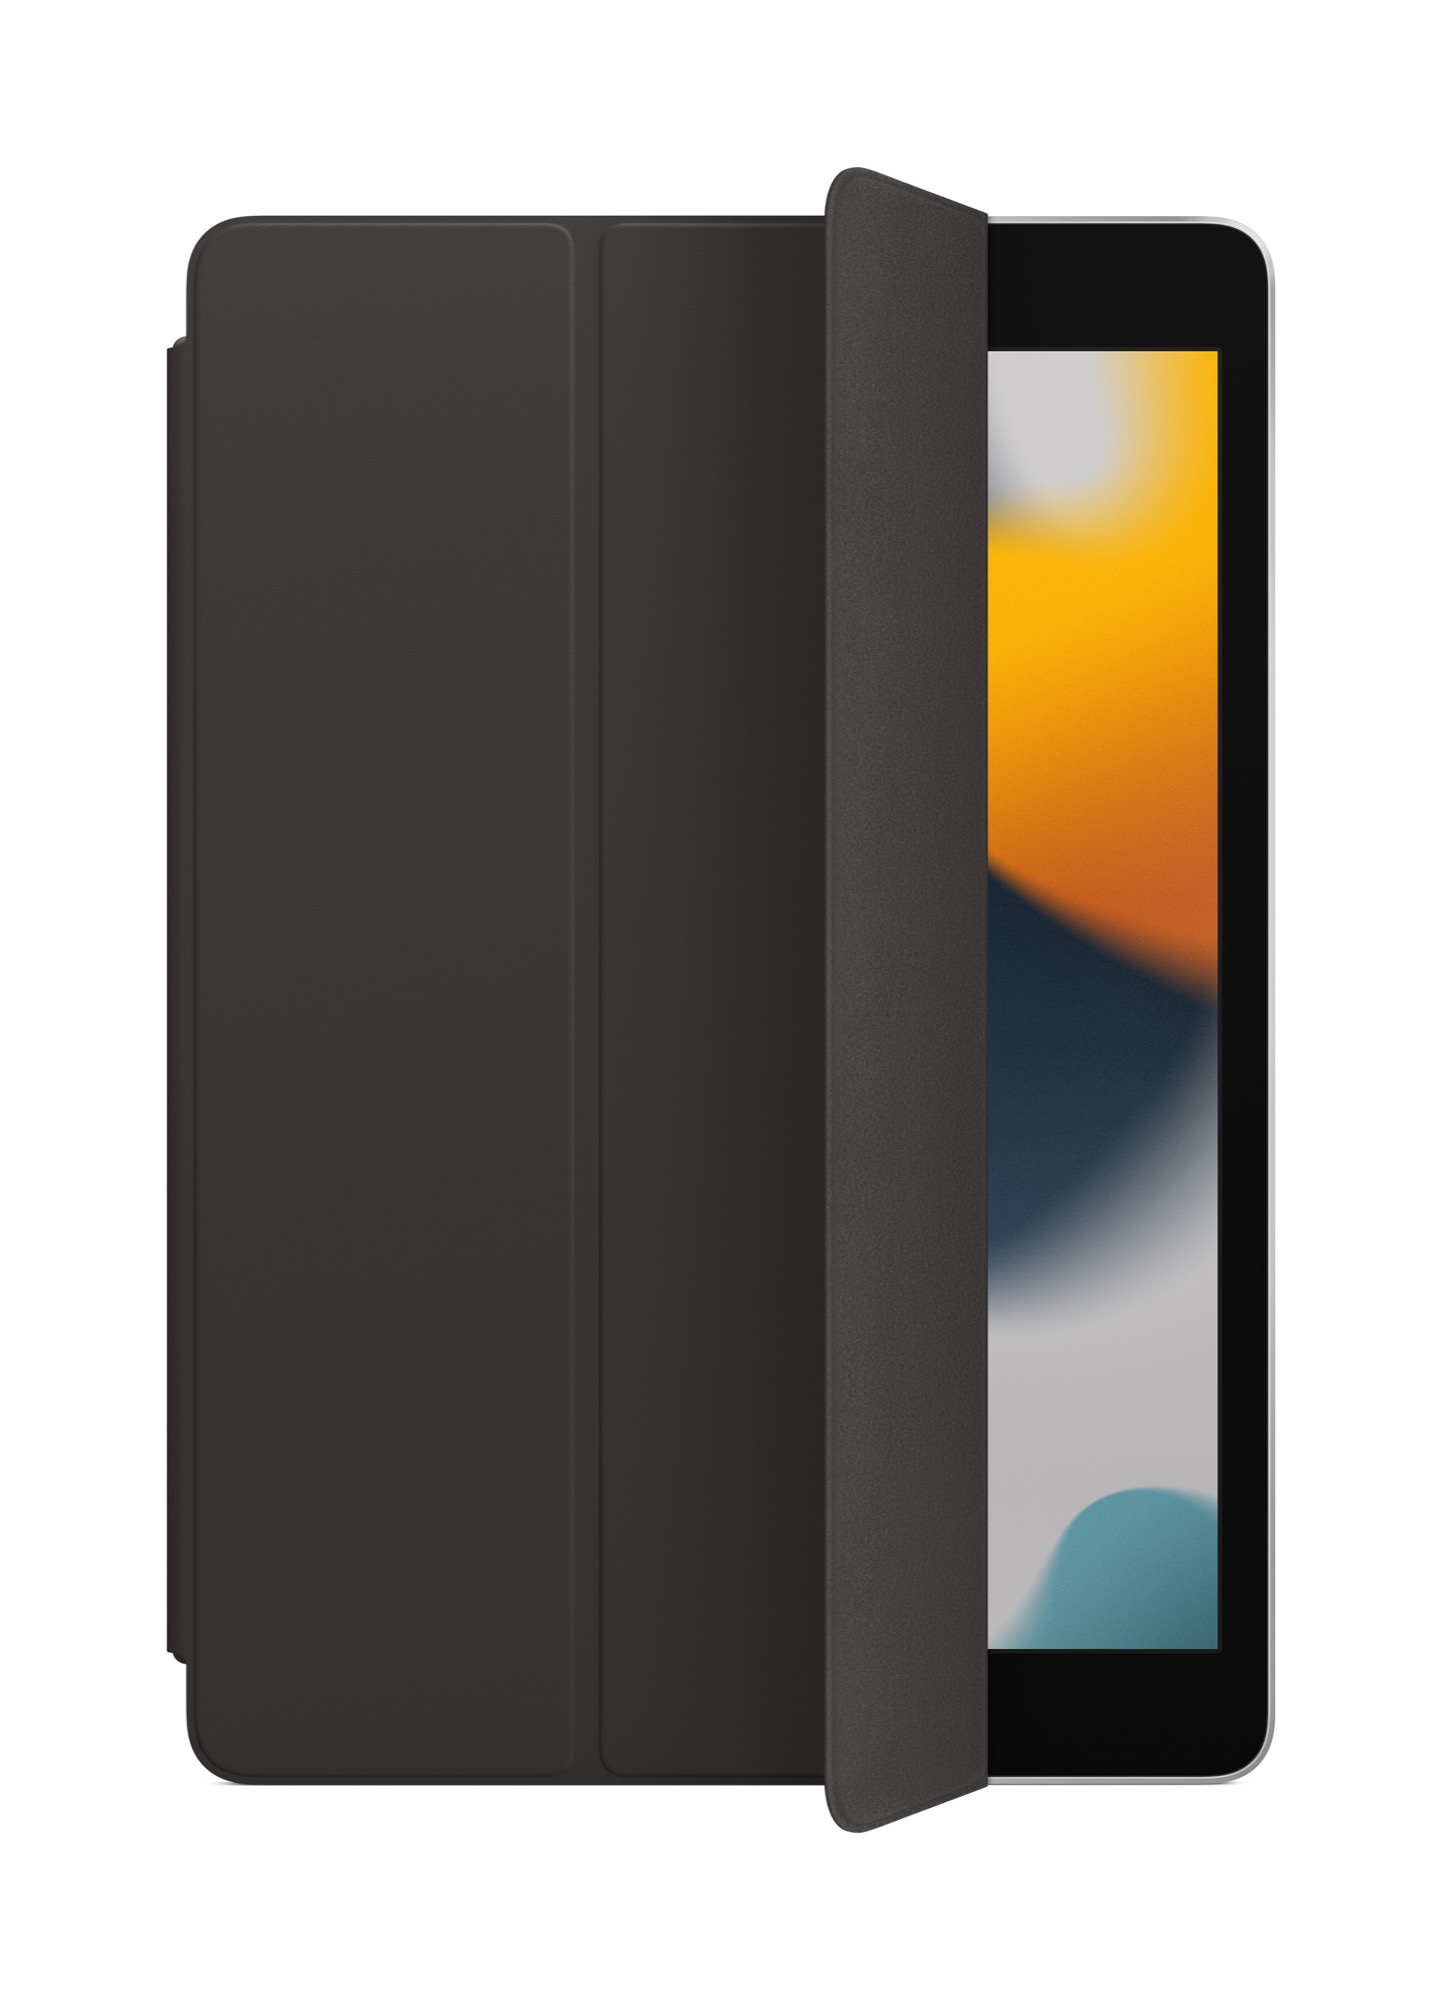 Smart Cover hetedik generációs iPadhez és harmadik generációs iPad Airhez – fekete